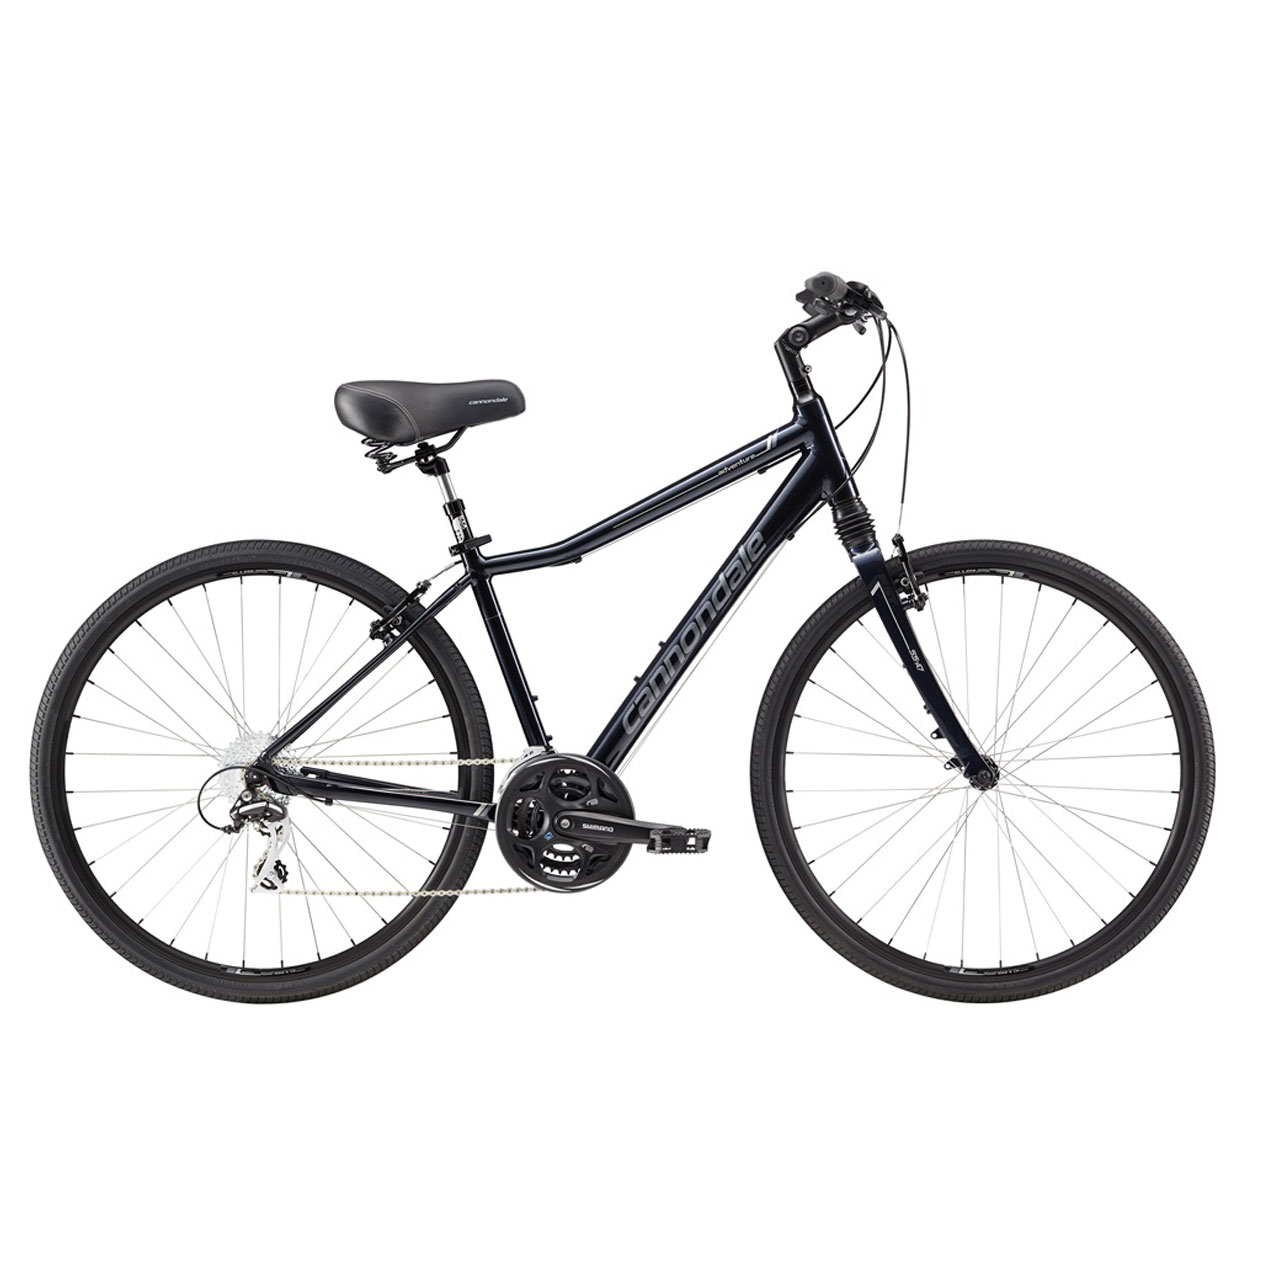 دوچرخه شهری کنندال Adventure 1 سایز 28 رنگ سورمه ای تیره2017